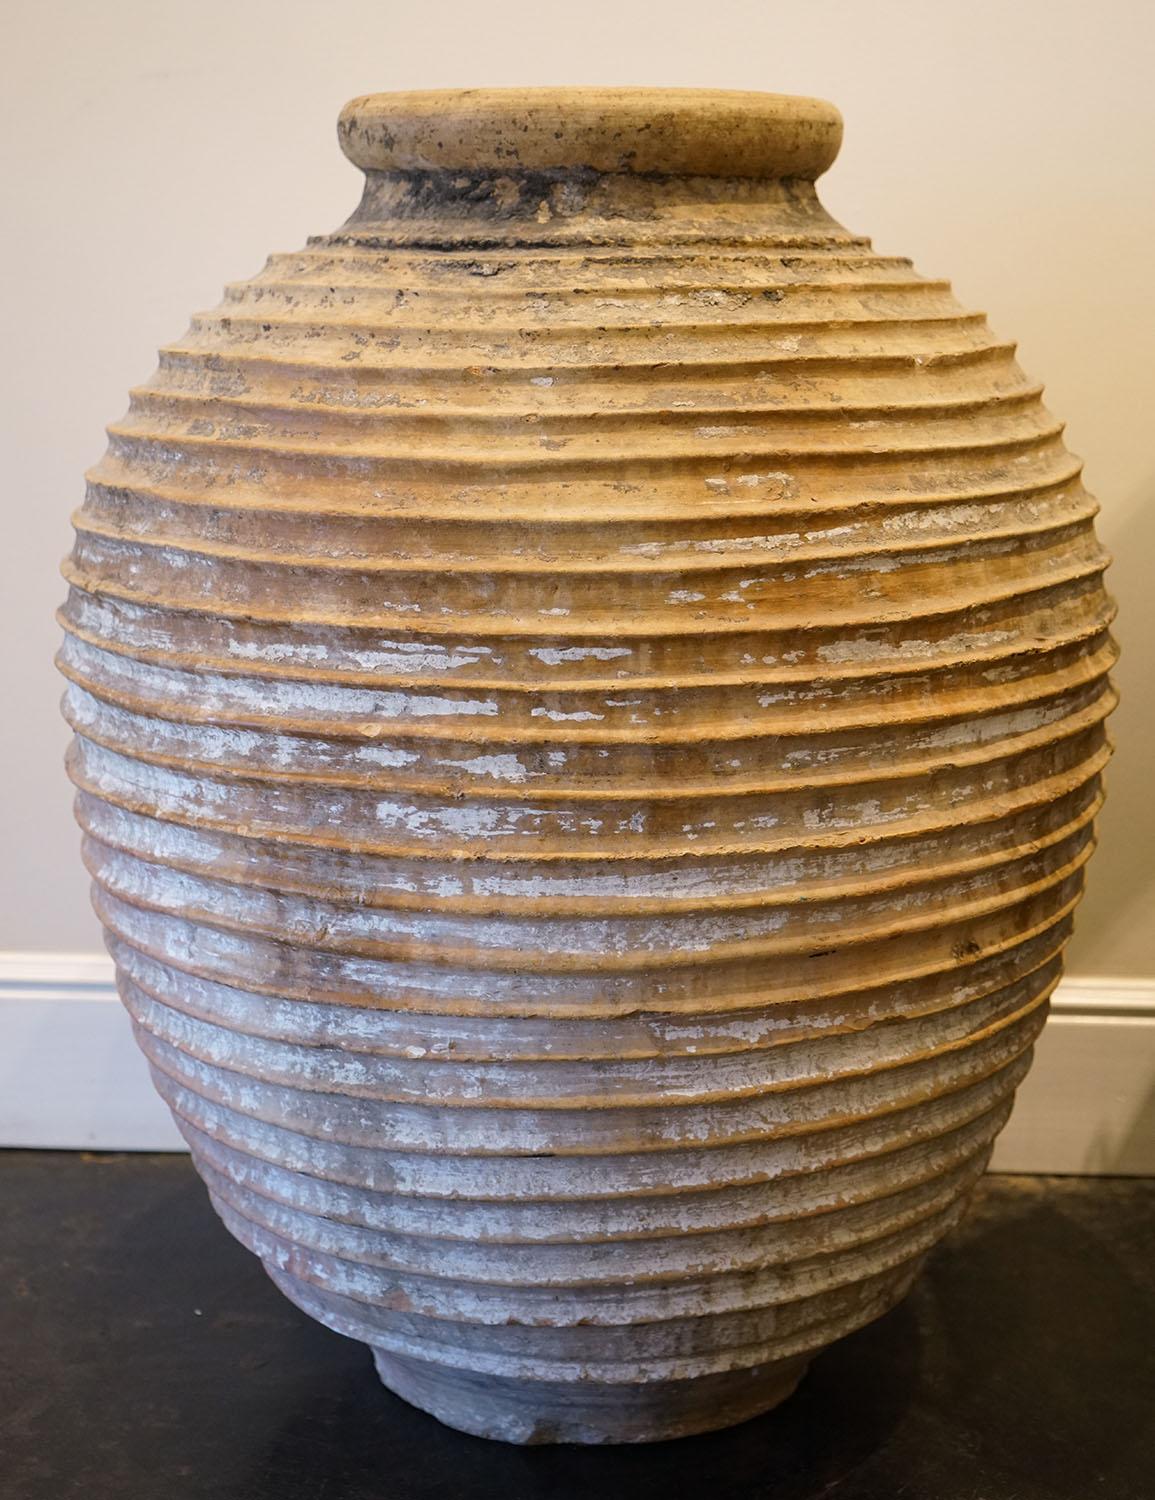 Un pot à olive méditerranéen de grande taille en terre cuite du début du 19e siècle. Cette jarre en terre cuite est née en Méditerranée dans les années 1800, où elle était utilisée pour stocker l'huile d'olive. Il présente un style typiquement grec